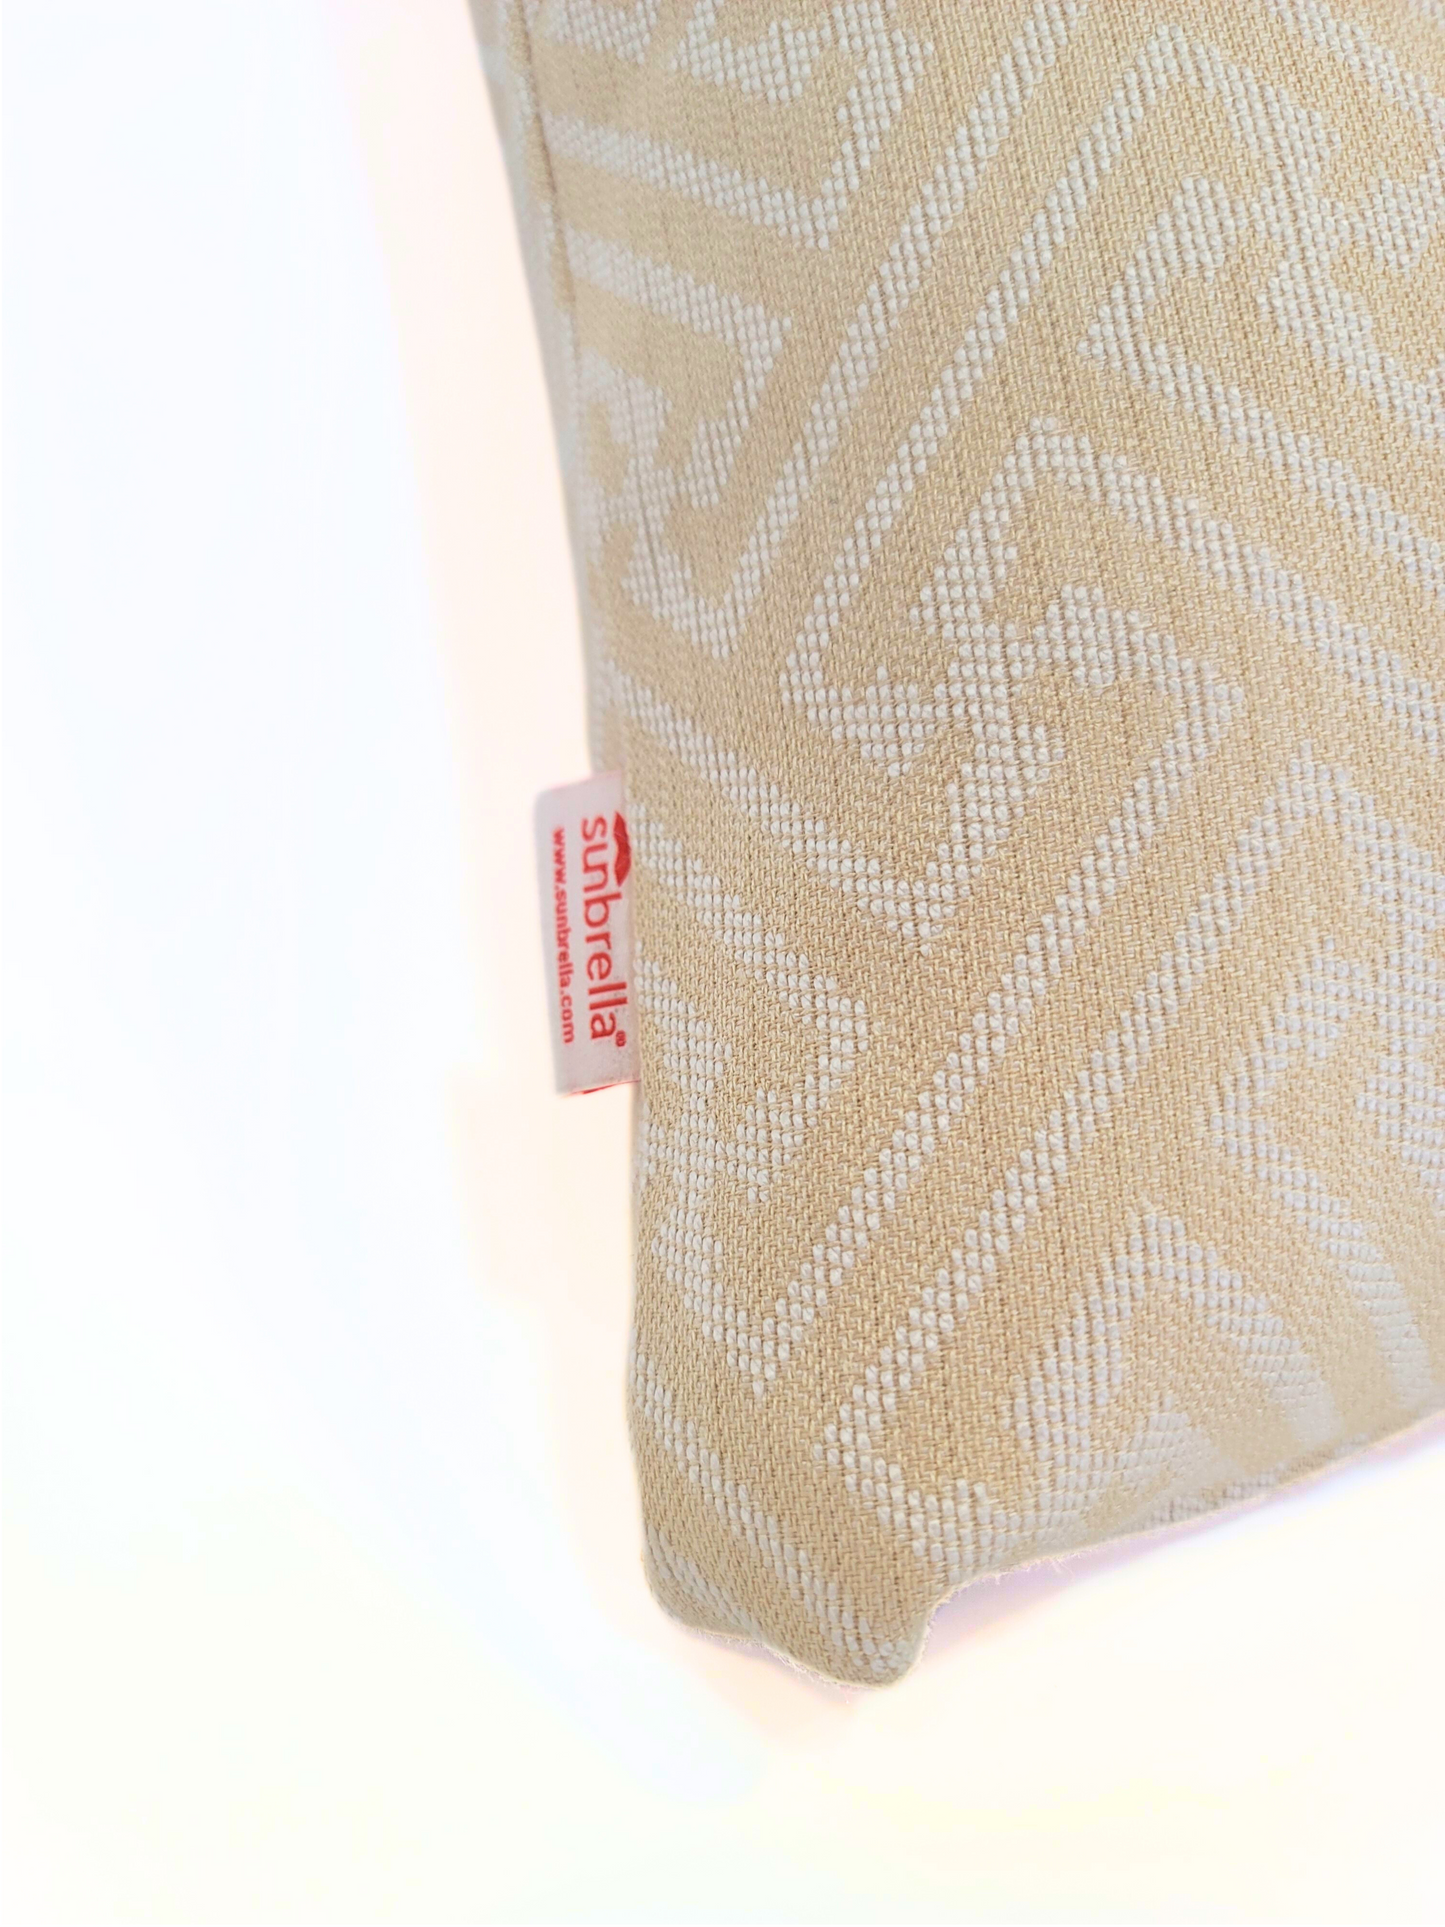 Premium Sunbrella "Meander Ivory" Indoor/Outdoor Toss Pillow Cover